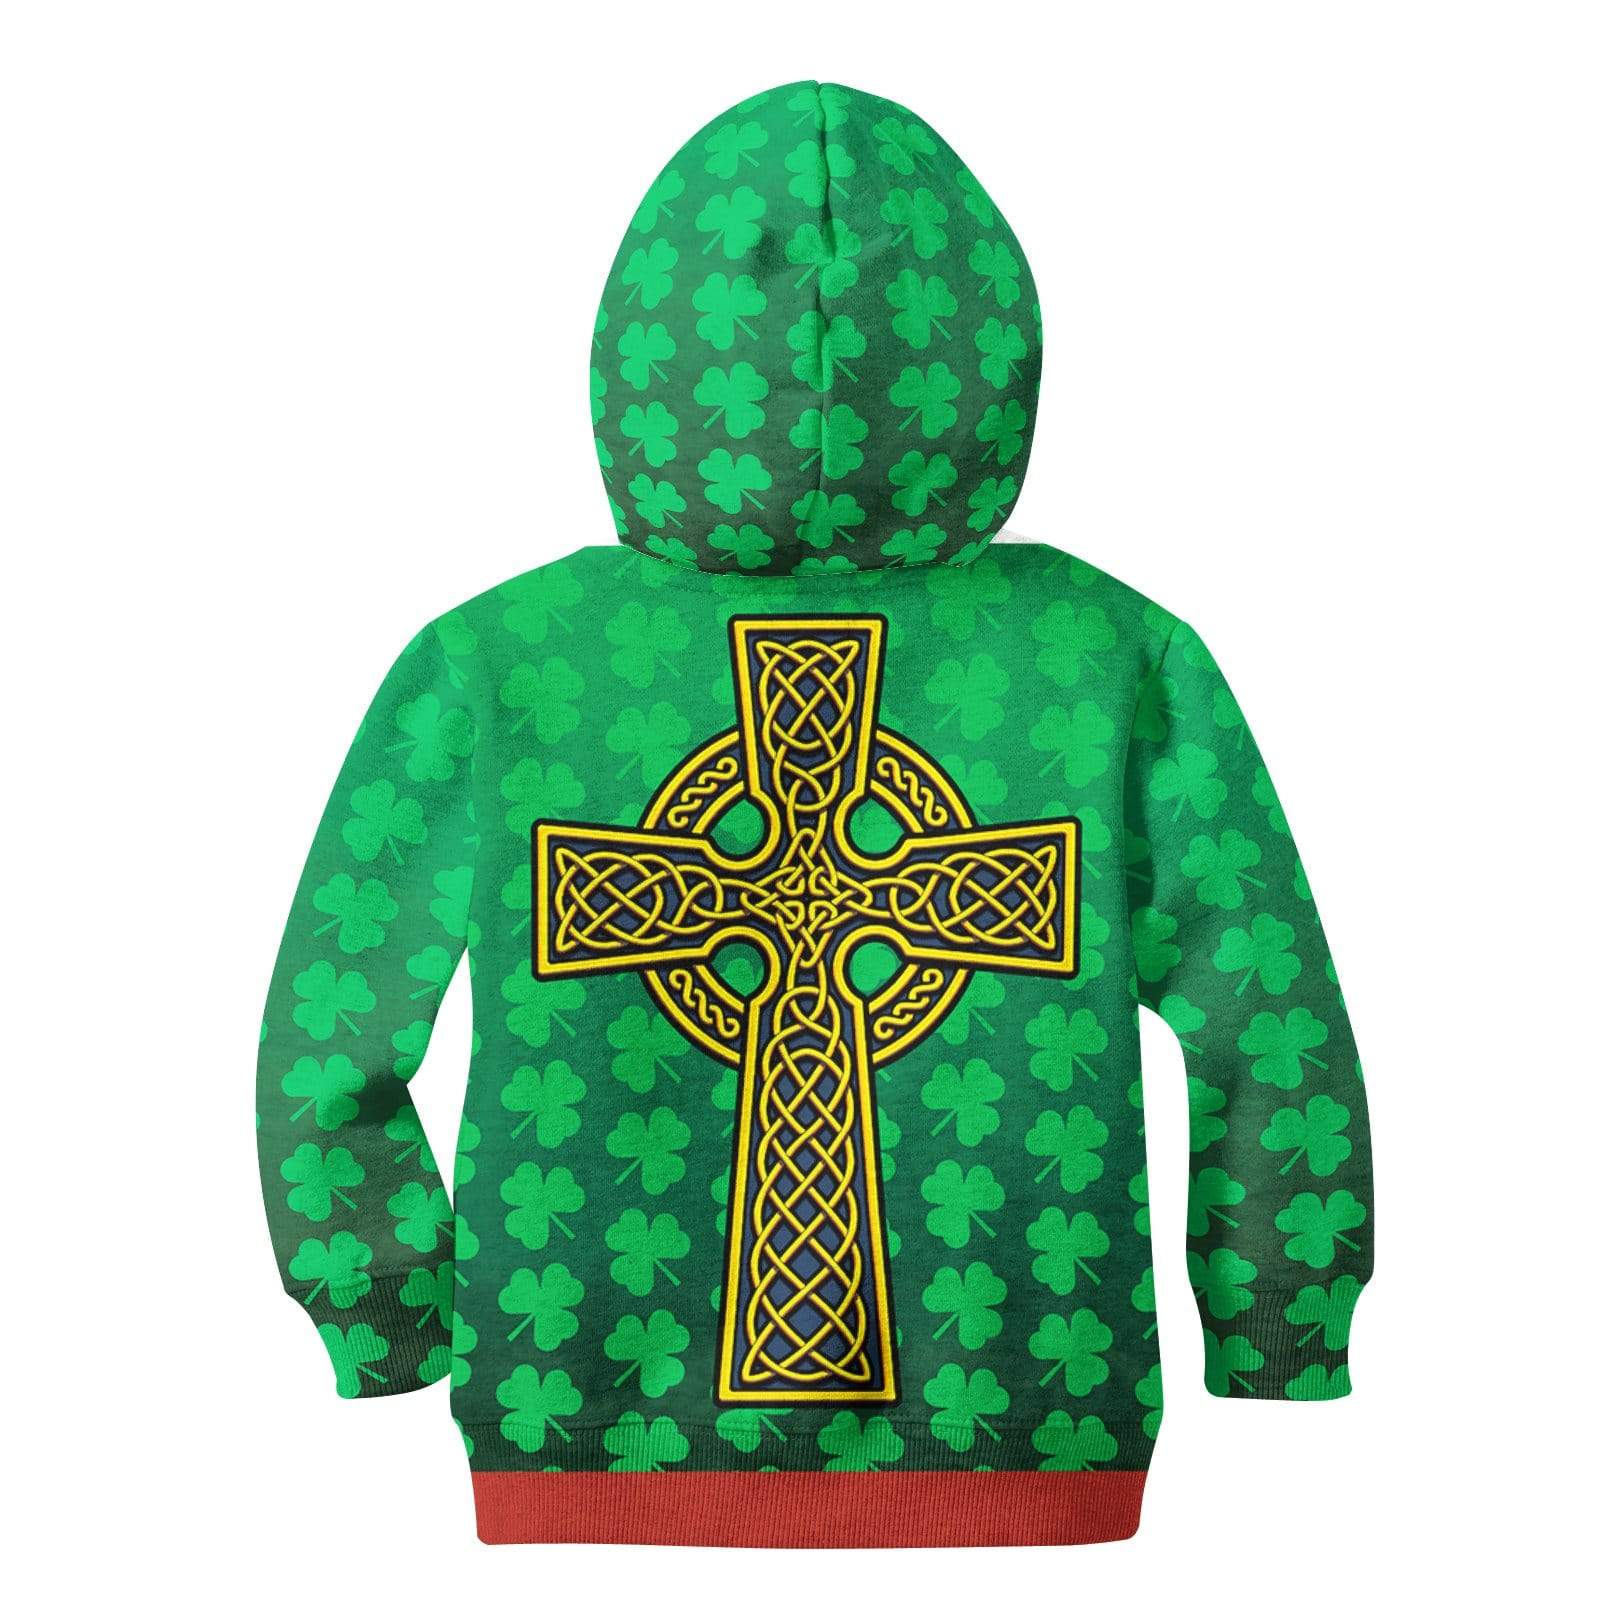 IRISH ST. PATRICK'S DAY Kid Custom Hoodies T-shirt Apparel HD-GH110671K kid 3D apparel 